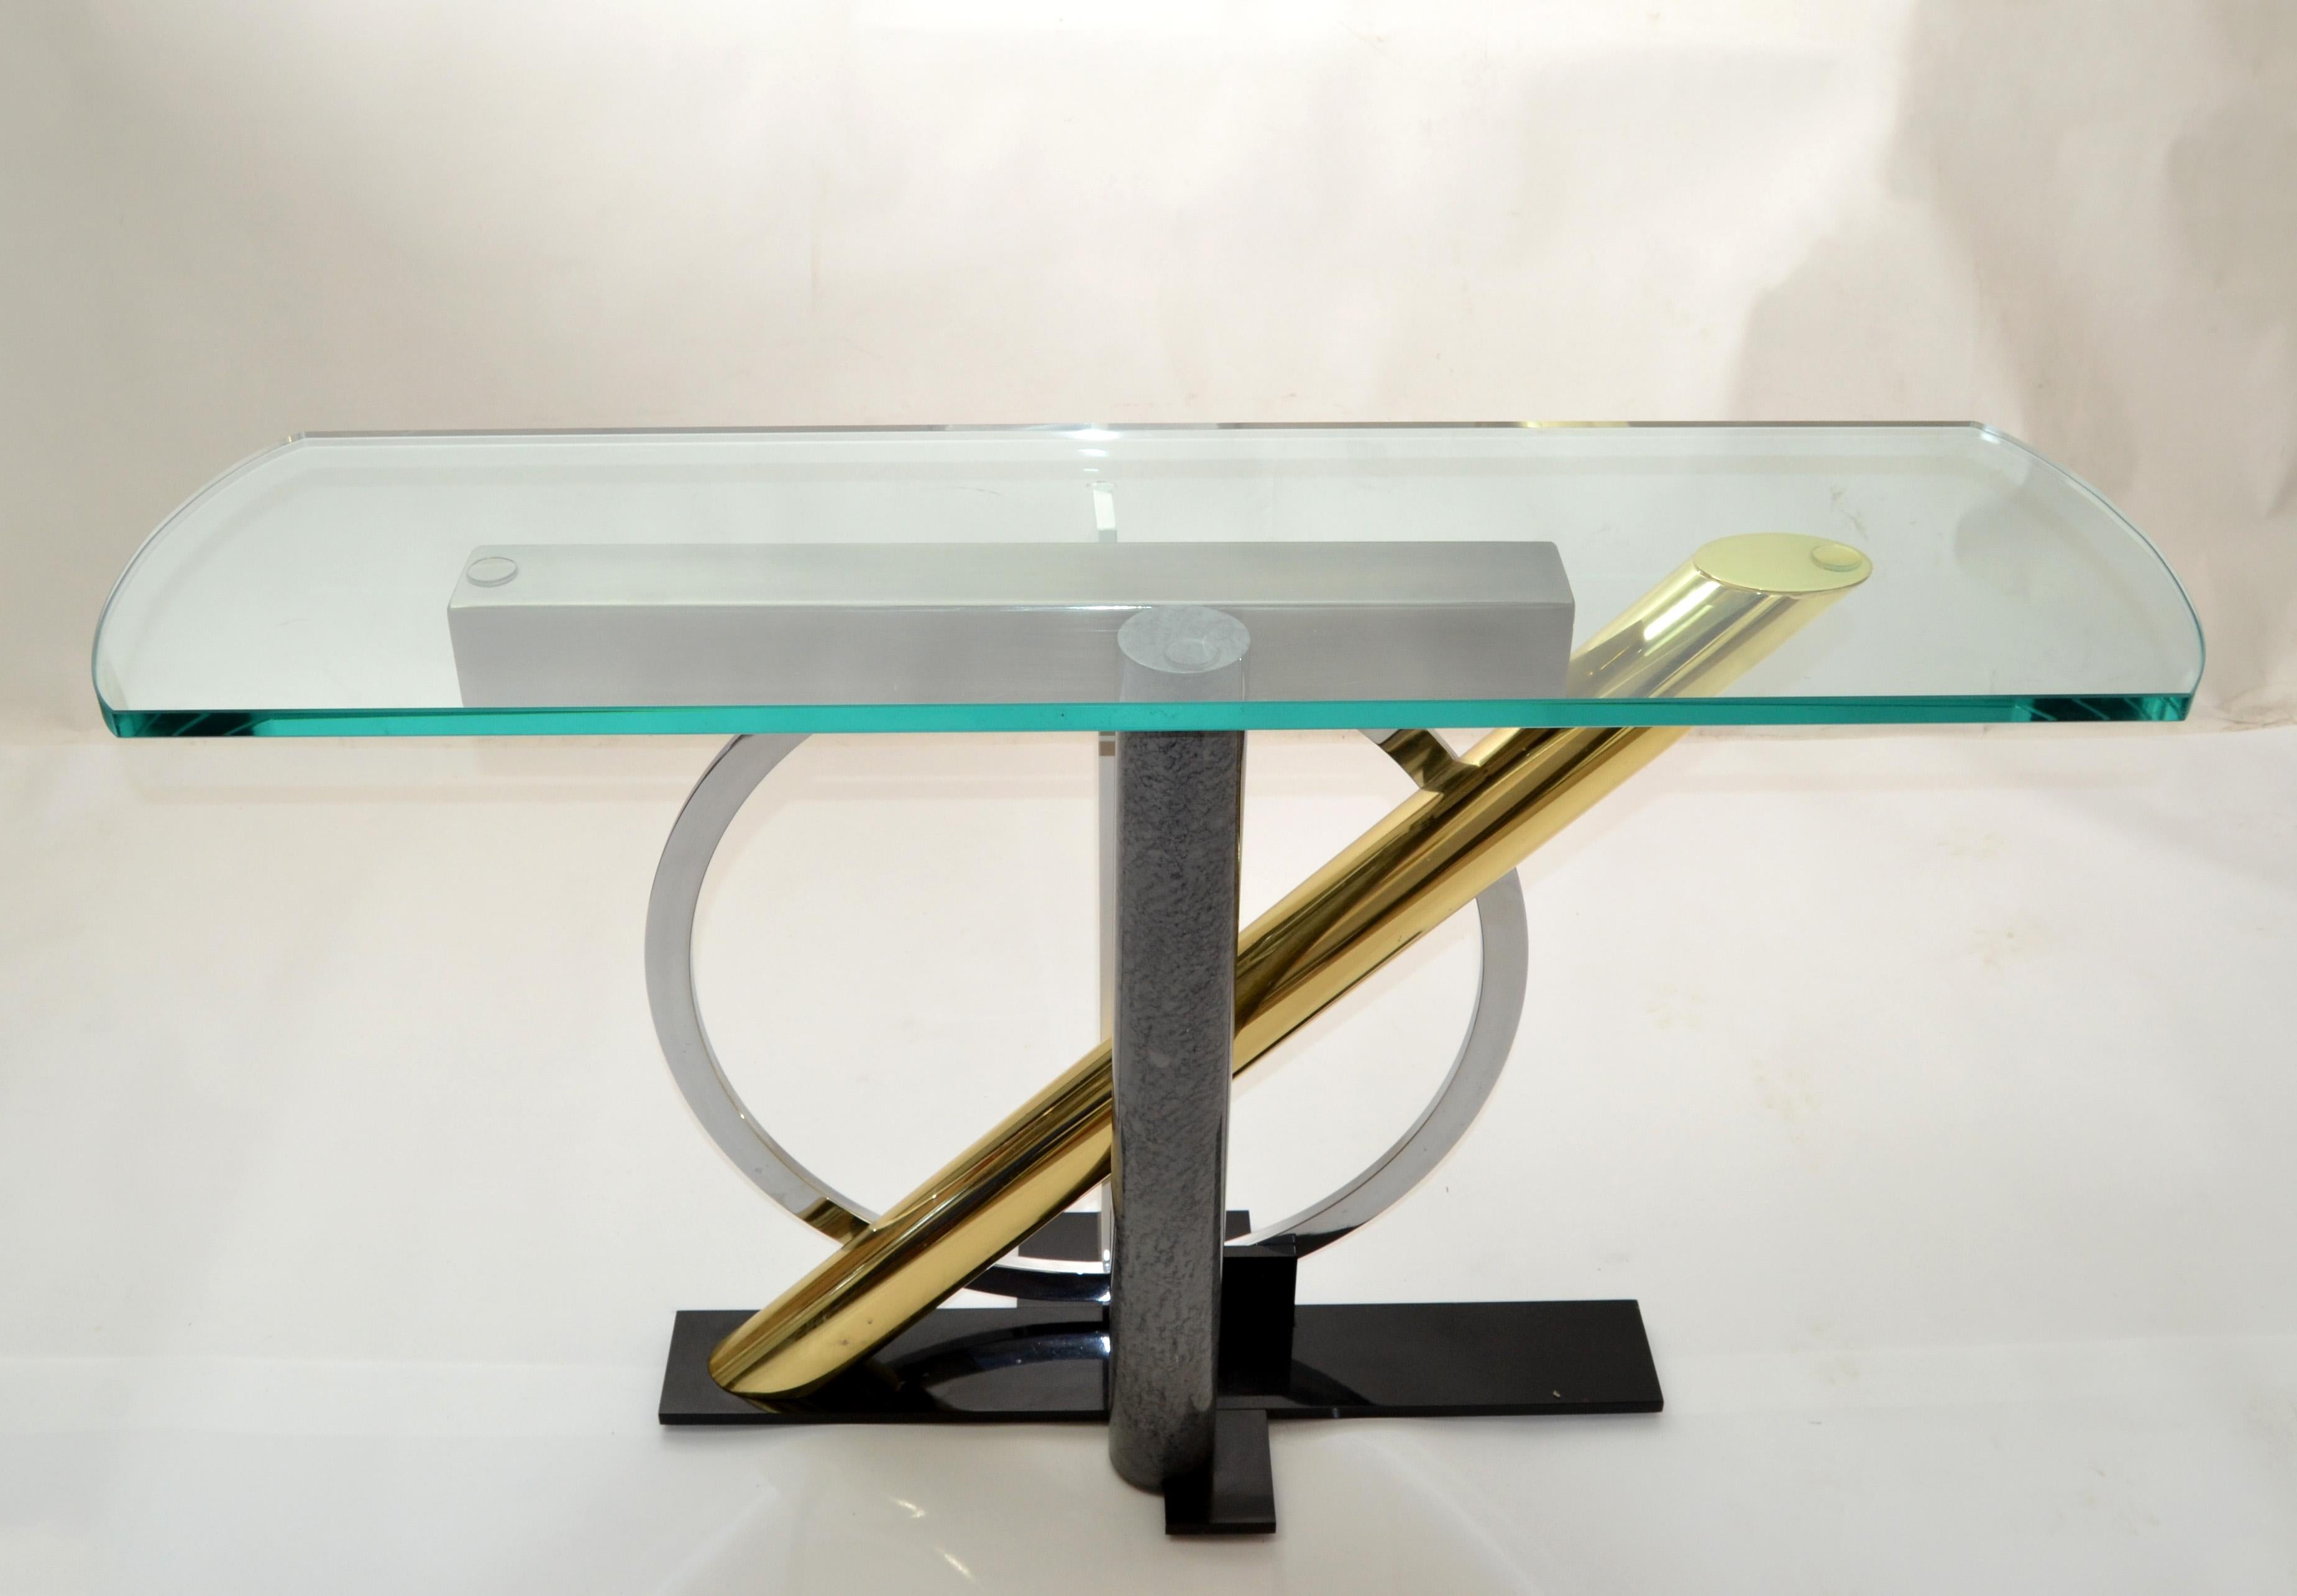 La fascinante table console Kaizo Oto du Design Institute of America. 
Une fantaisie de construction métallique à cinq variantes pour le salon ou le couloir.
Le design des années 1980 montre que tout est possible, et l'optimisme a régné sur ceux